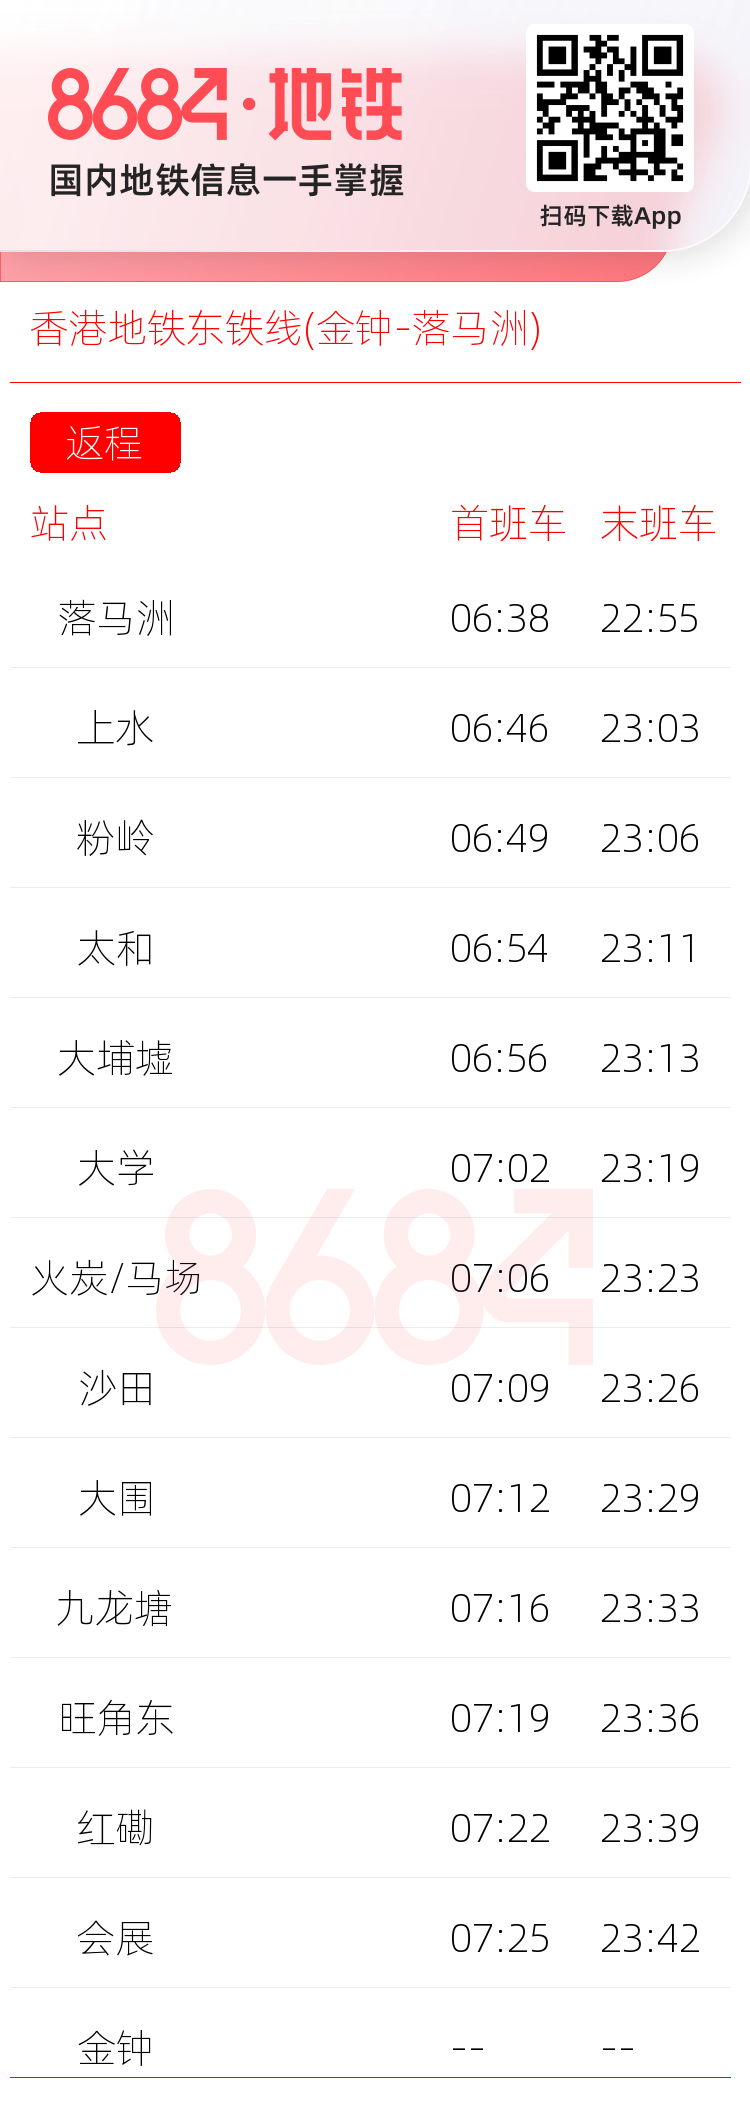 香港地铁东铁线(金钟-落马洲)运营时间表